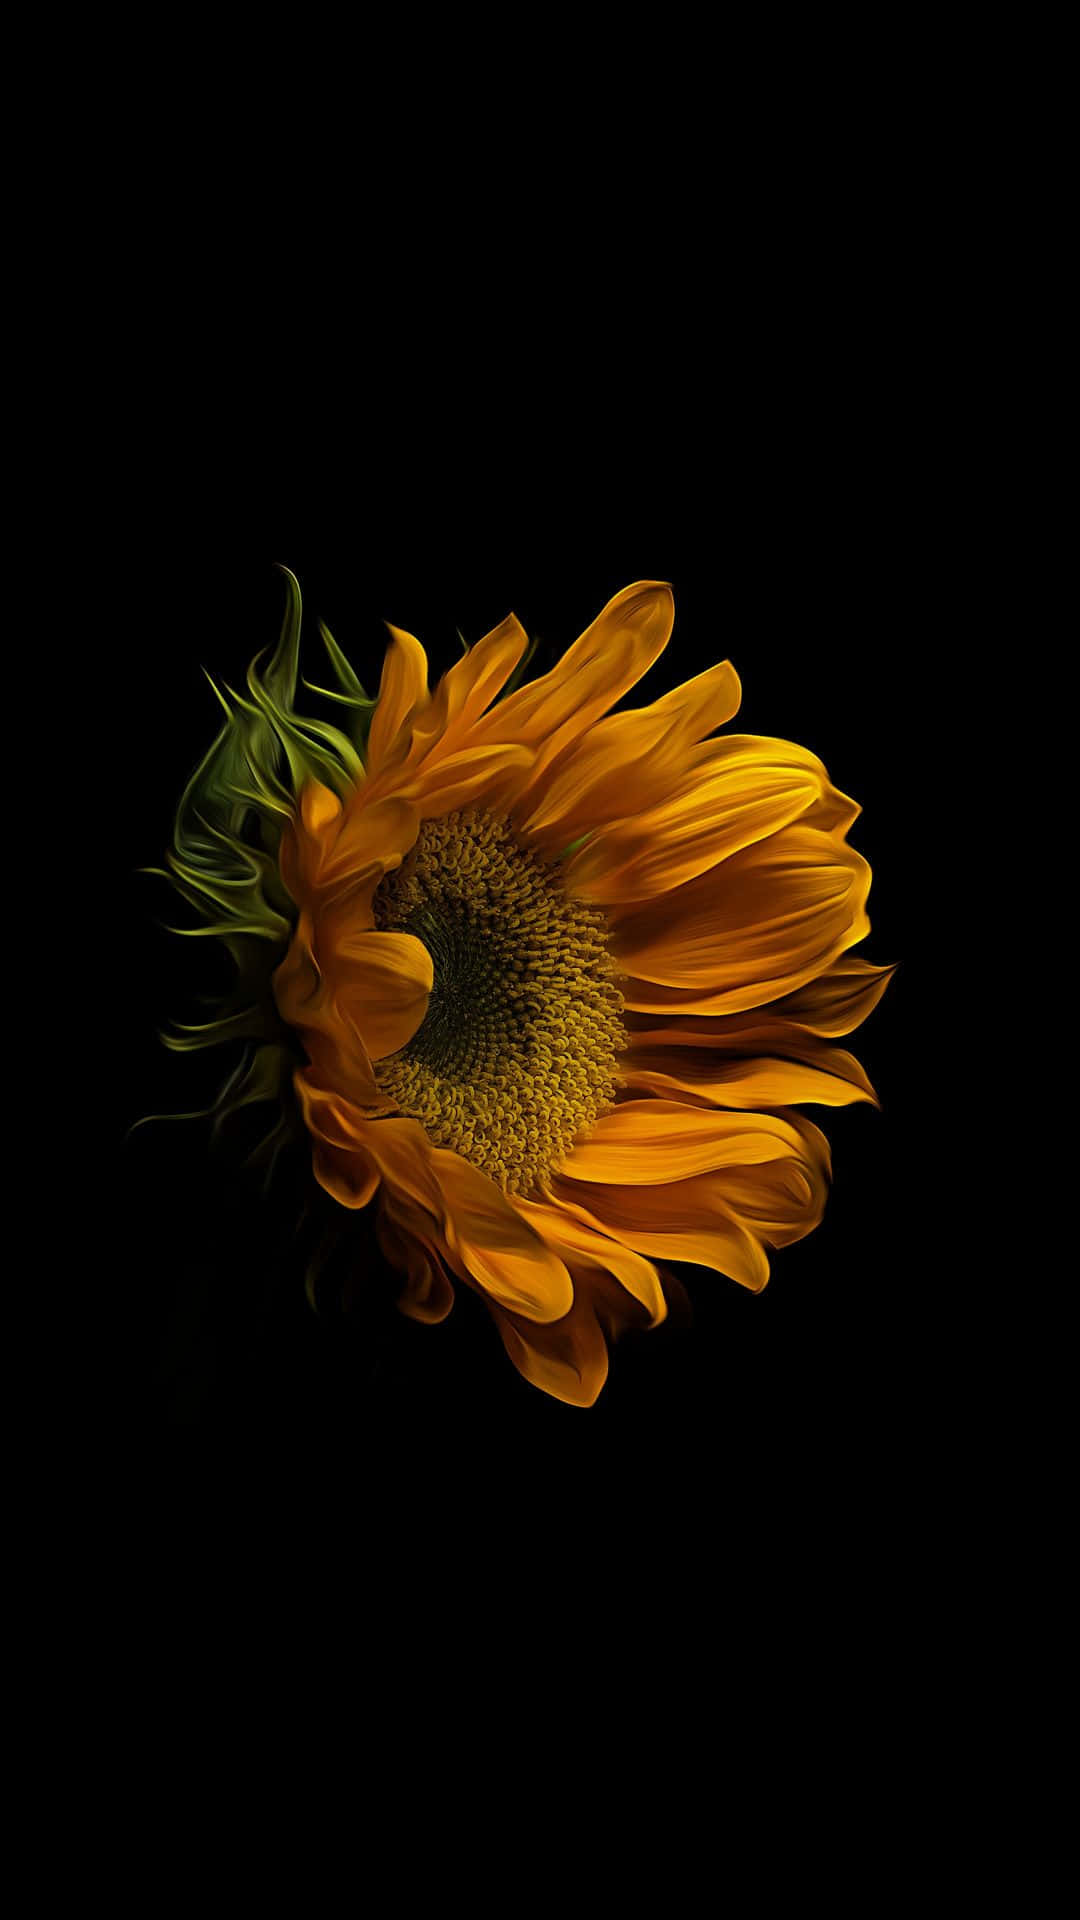 Bildeine Lebendige Dunkle Sonnenblume Auf Einem Schwarz-weißen Hintergrund Wallpaper